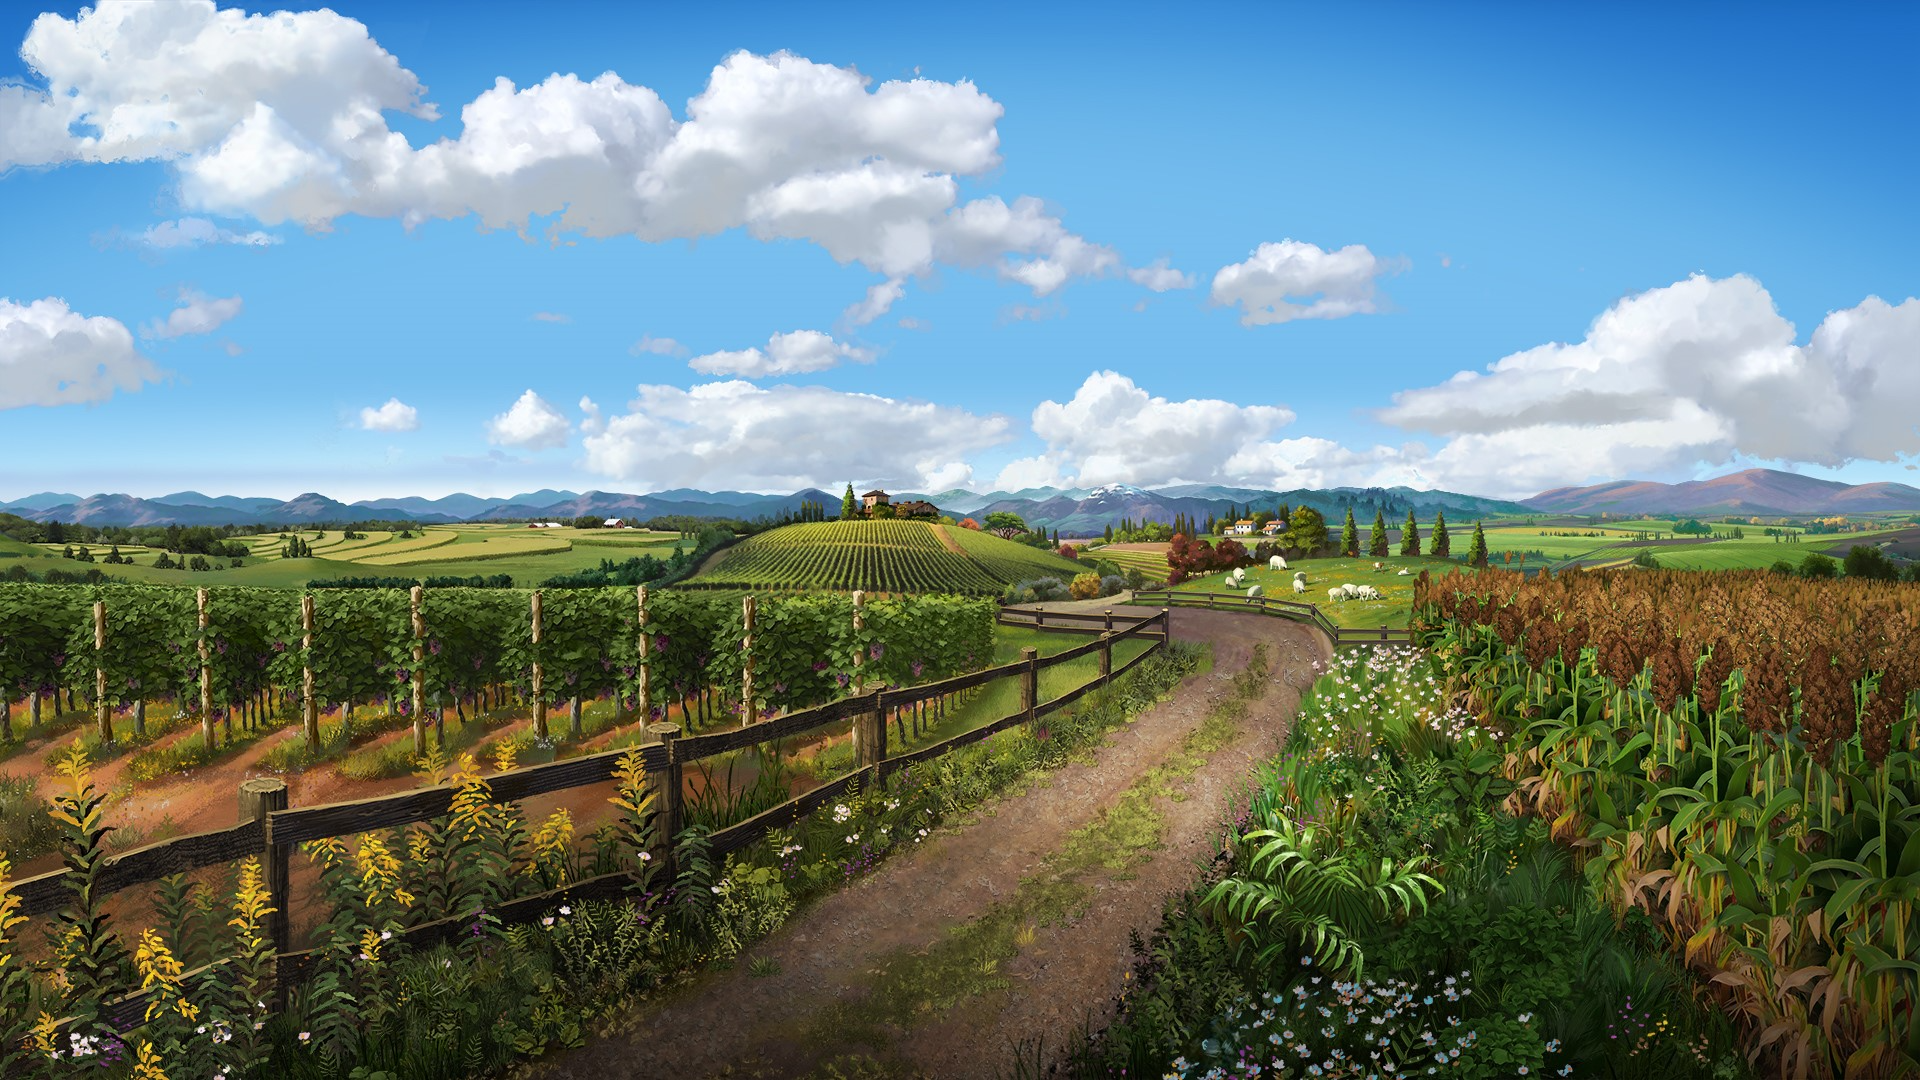 Farming Simulator 22: Premium Edition .PS4 para - Los mejores videojuegos